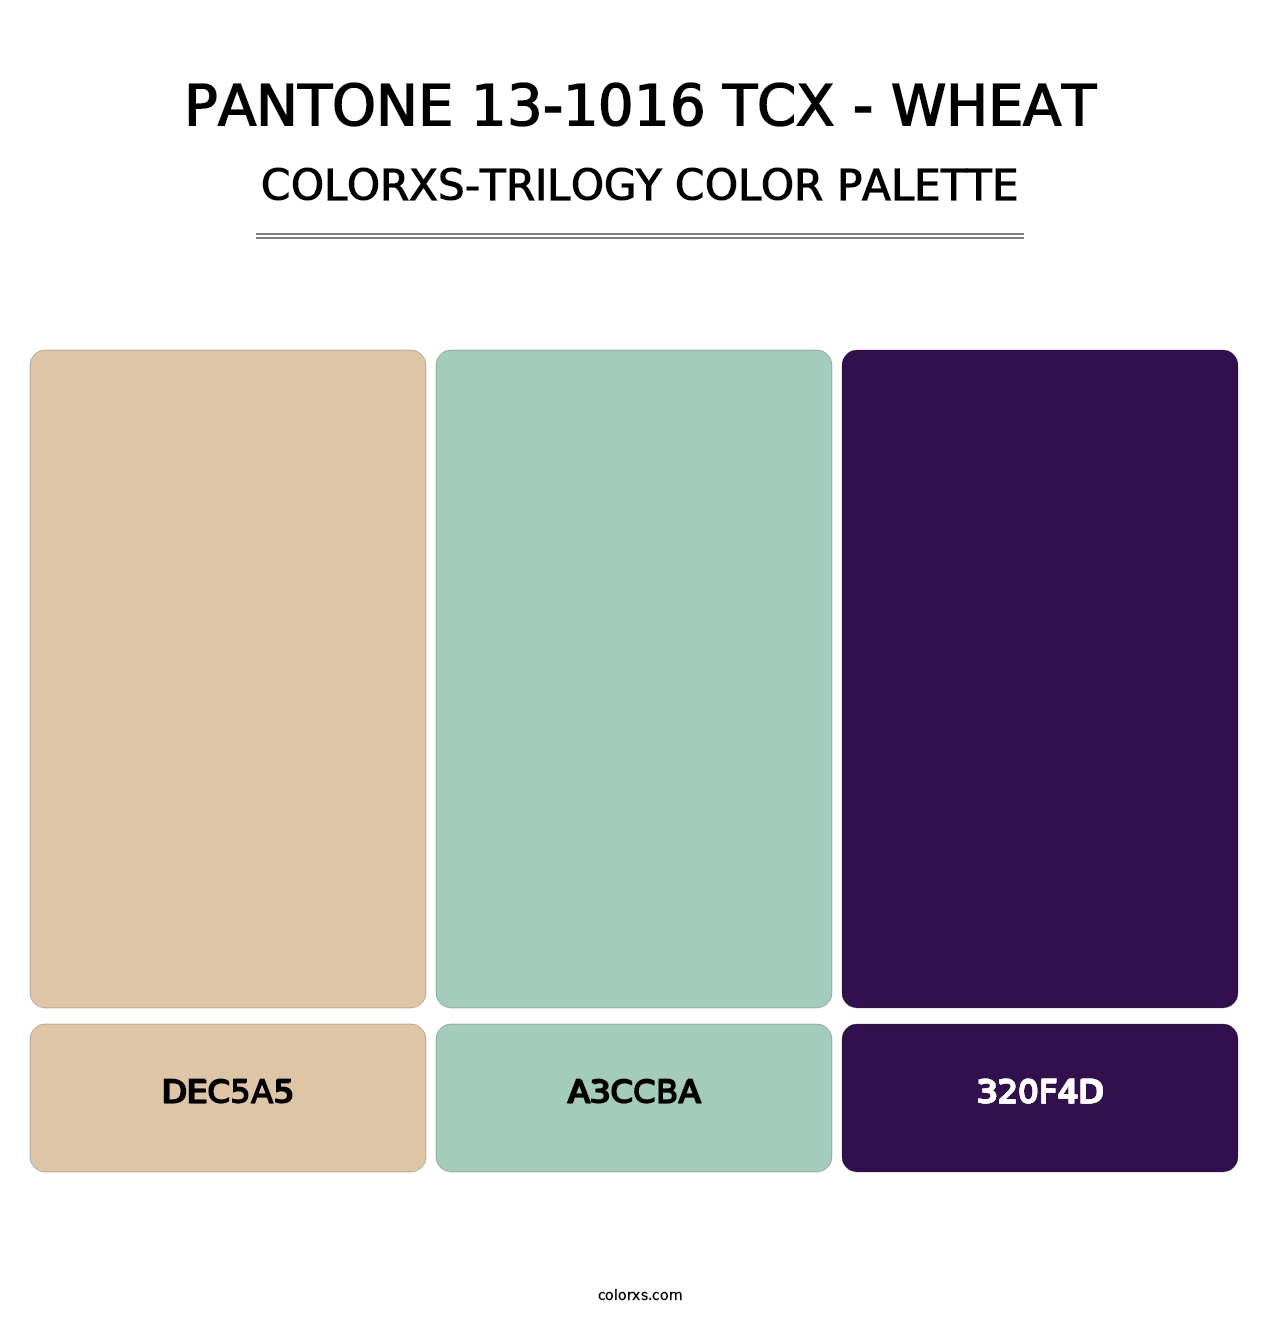 PANTONE 13-1016 TCX - Wheat - Colorxs Trilogy Palette